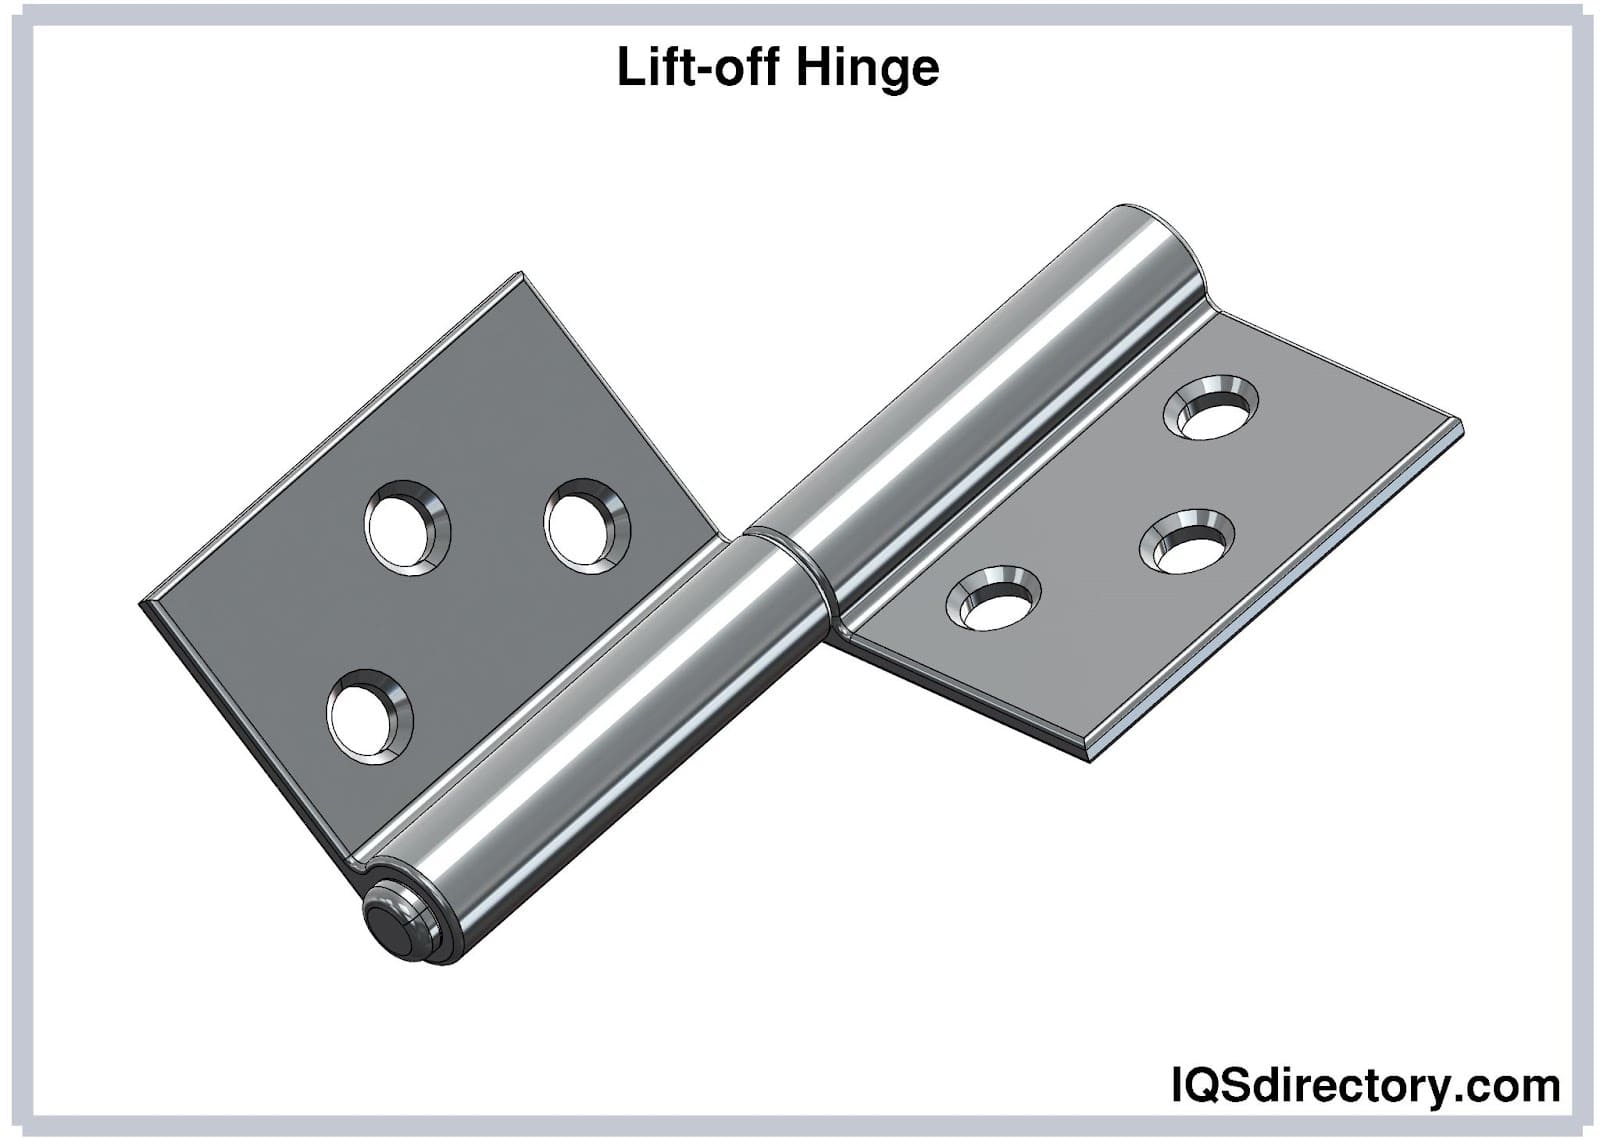 Lift-off hinge